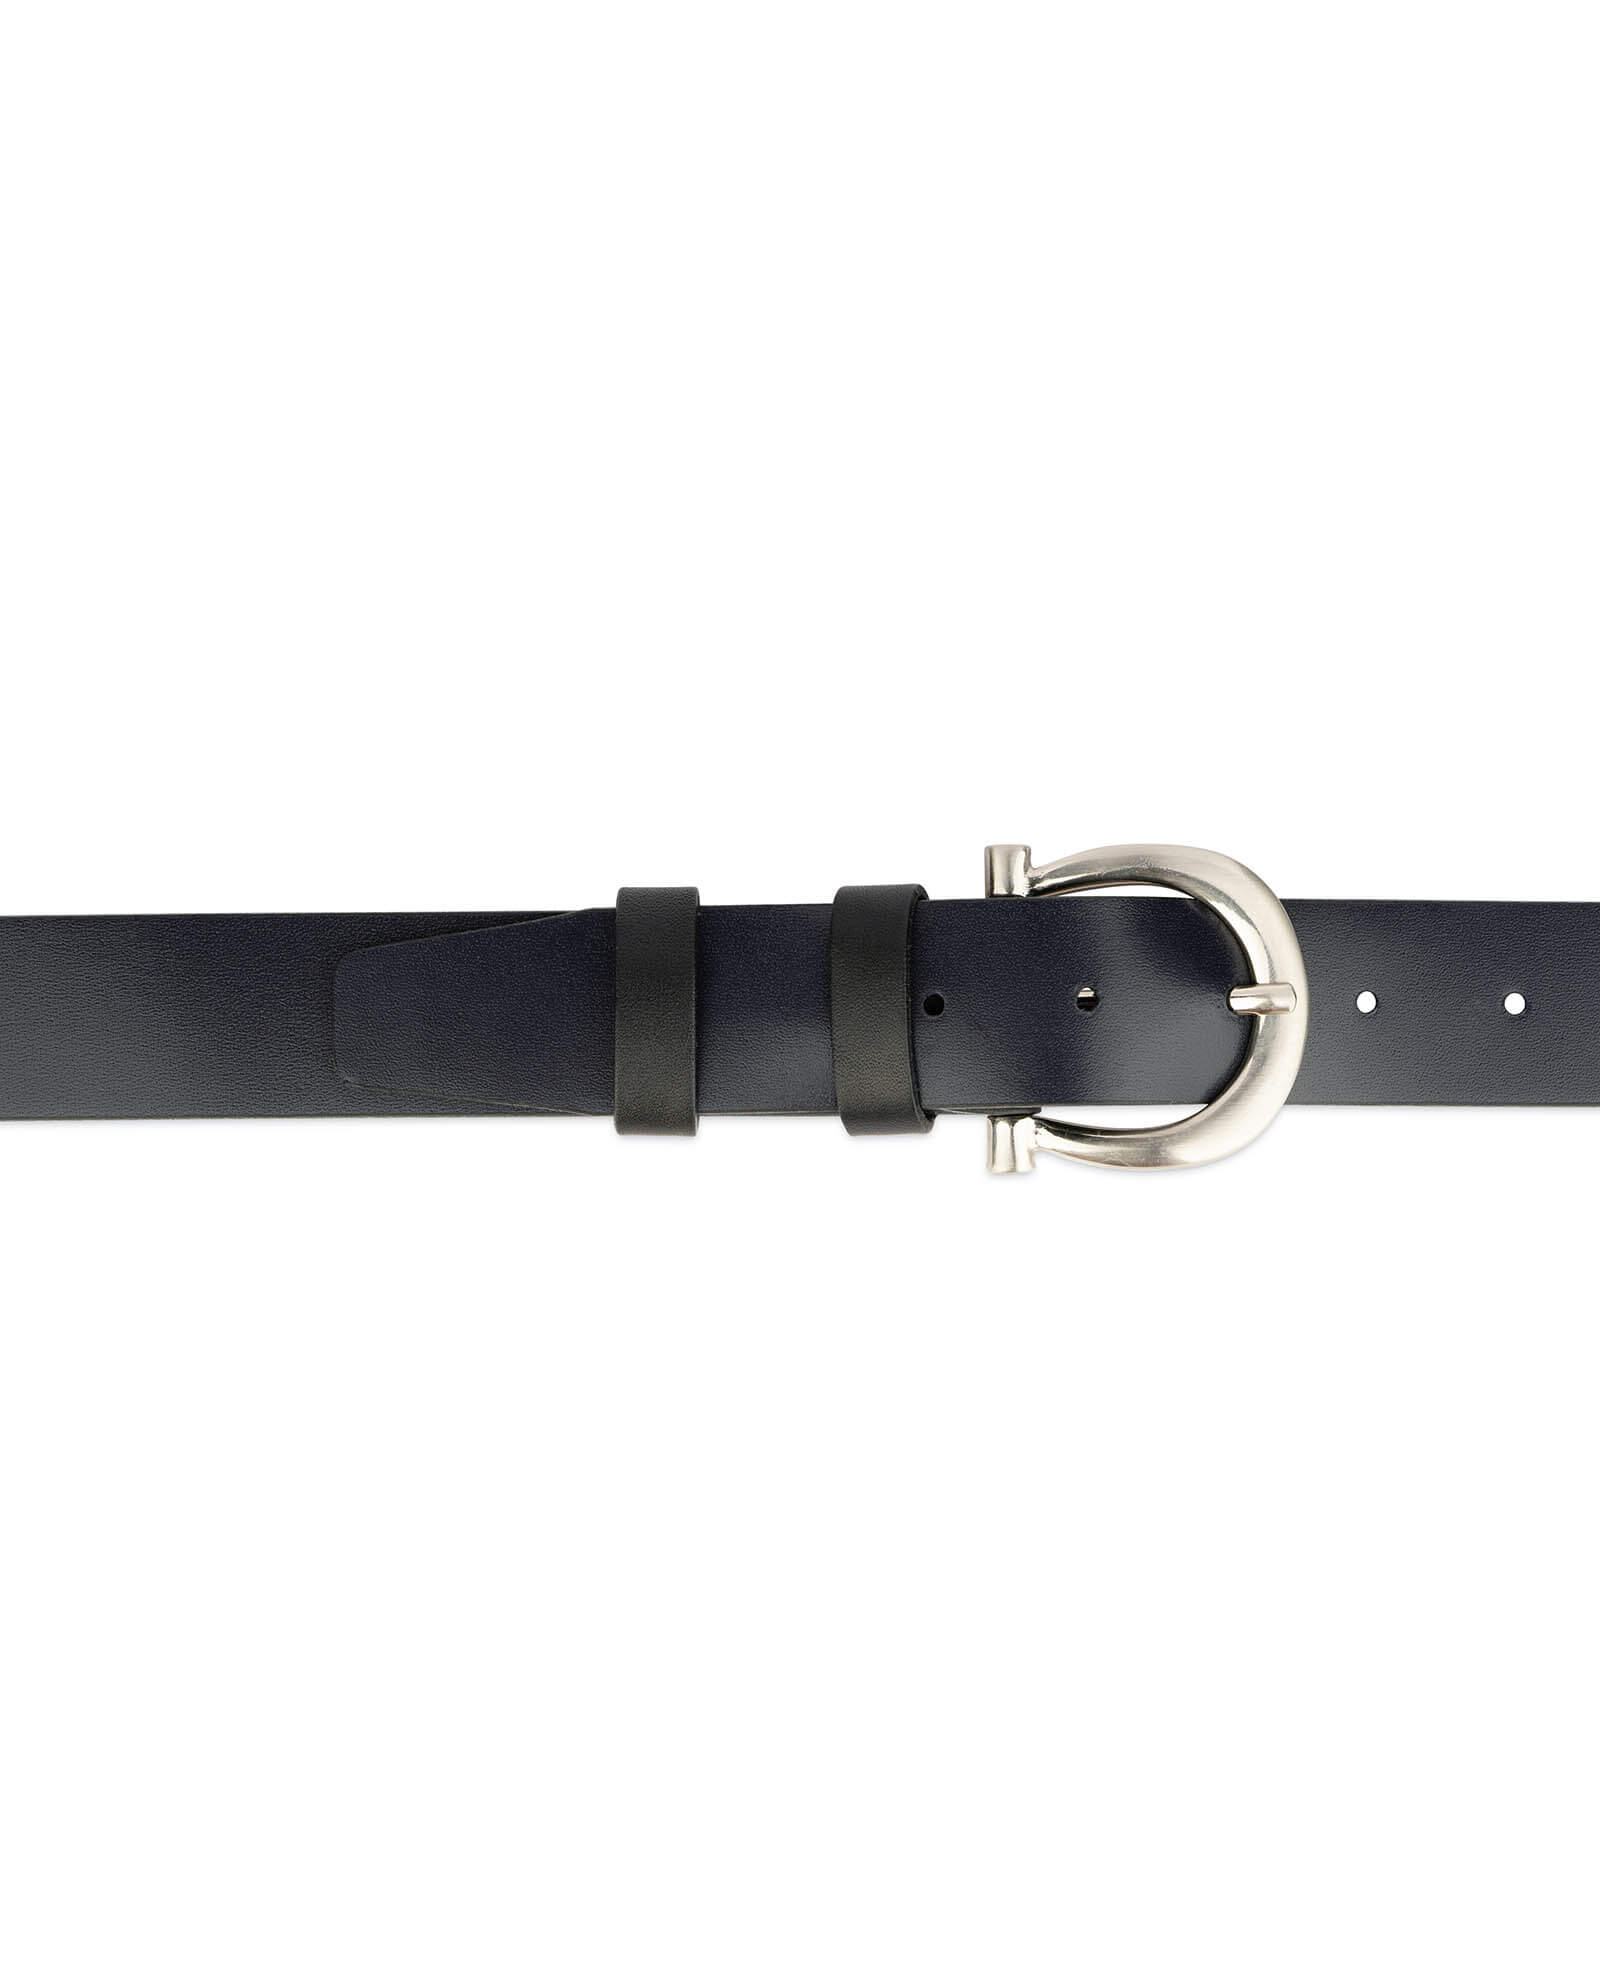 Buy Womens Navy Blue Belt With Horse Shoe Buckle | LeatherBeltsOnline